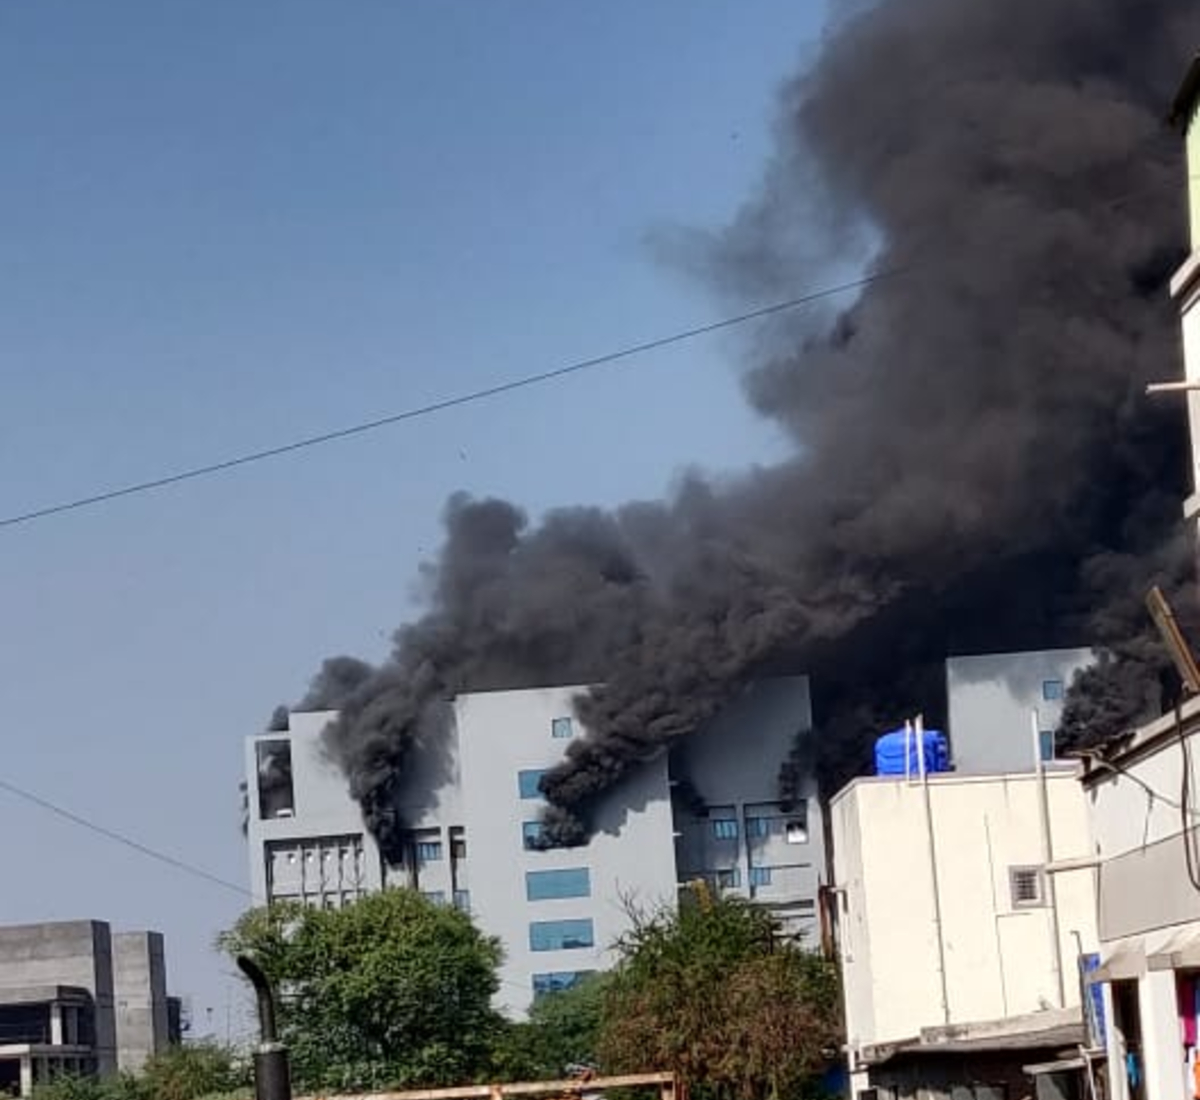 पुणे-सीरम इंस्टीट्यूट के नए प्लांट में लगी आग, 5 लोगों की मौत